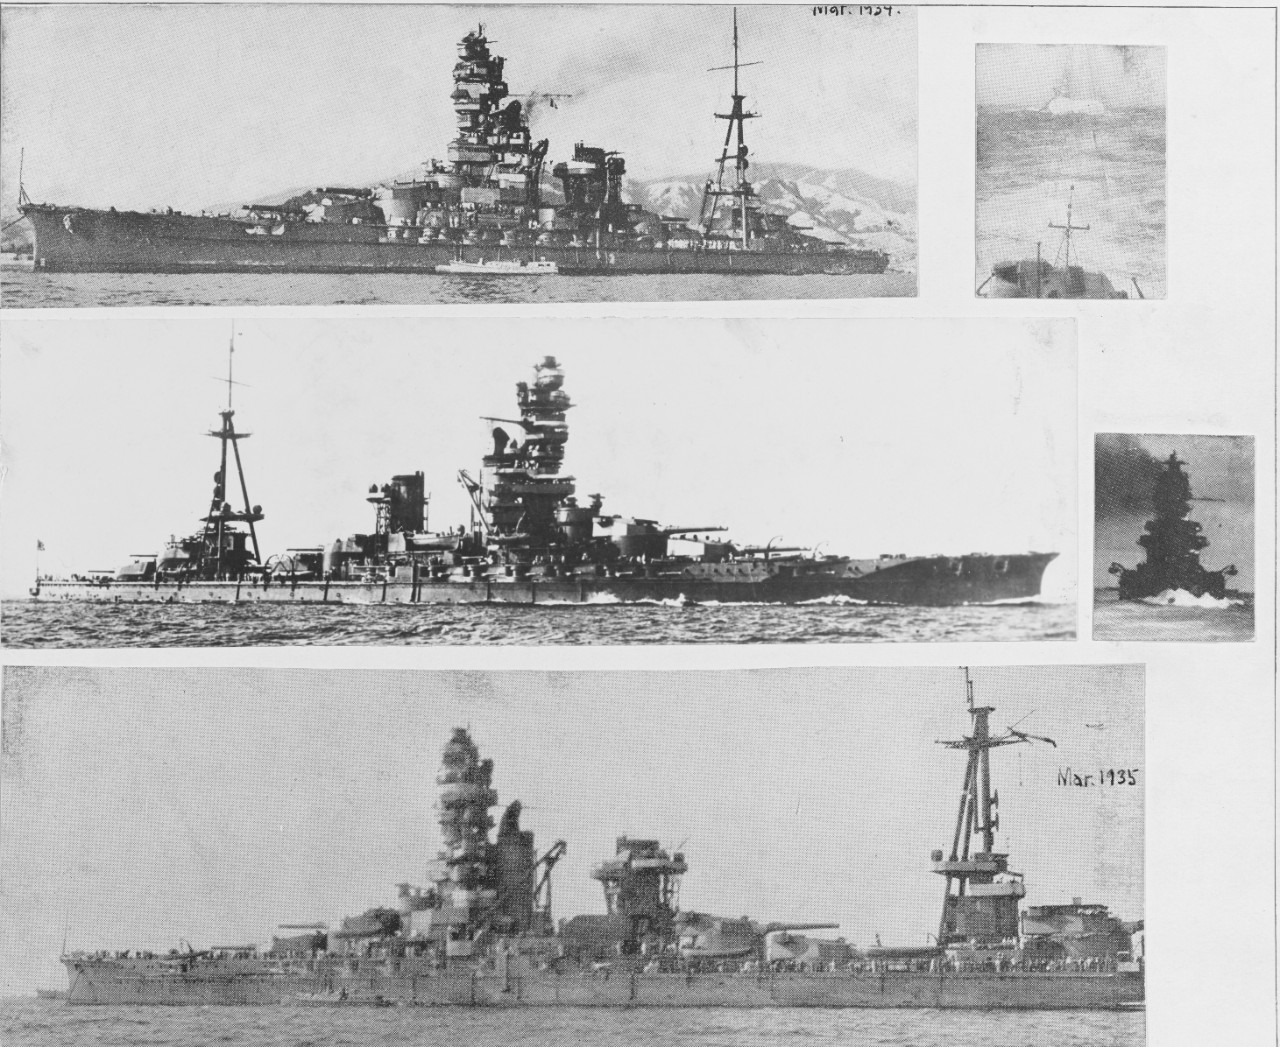 Japanese battleship: H.I.J.M.S. HYUGA